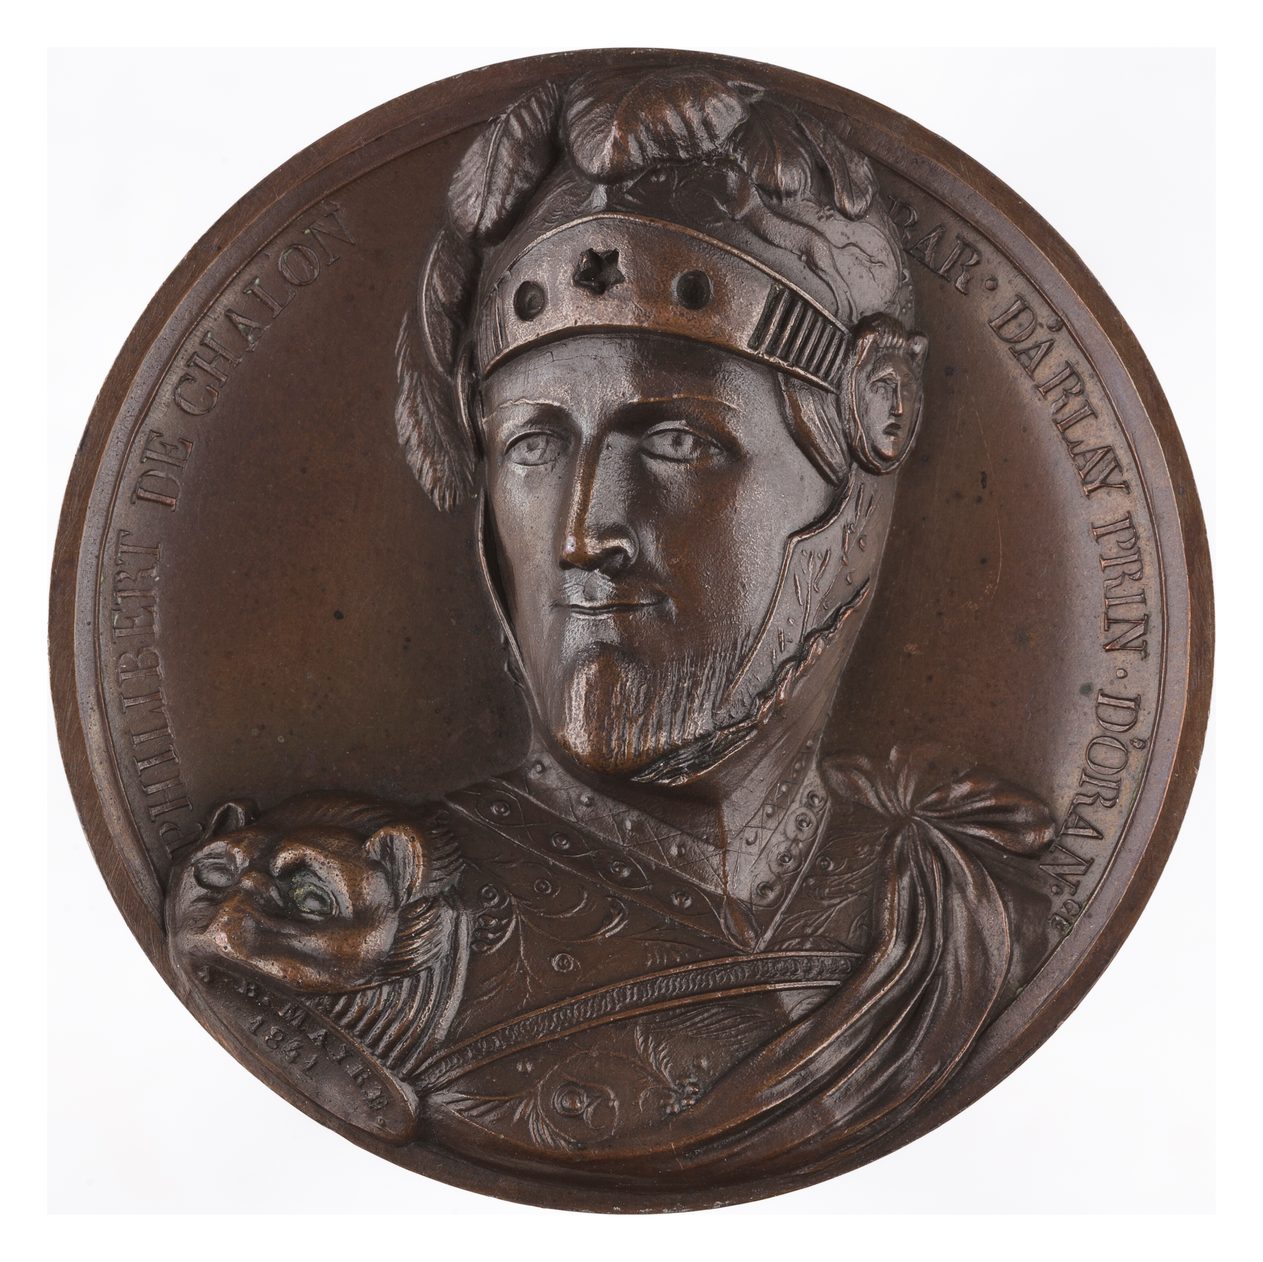 médaille Philibert de Chalon 2015-06-00615 © David Vuillermoz, Musées de Lons-le-Saunier (copie)